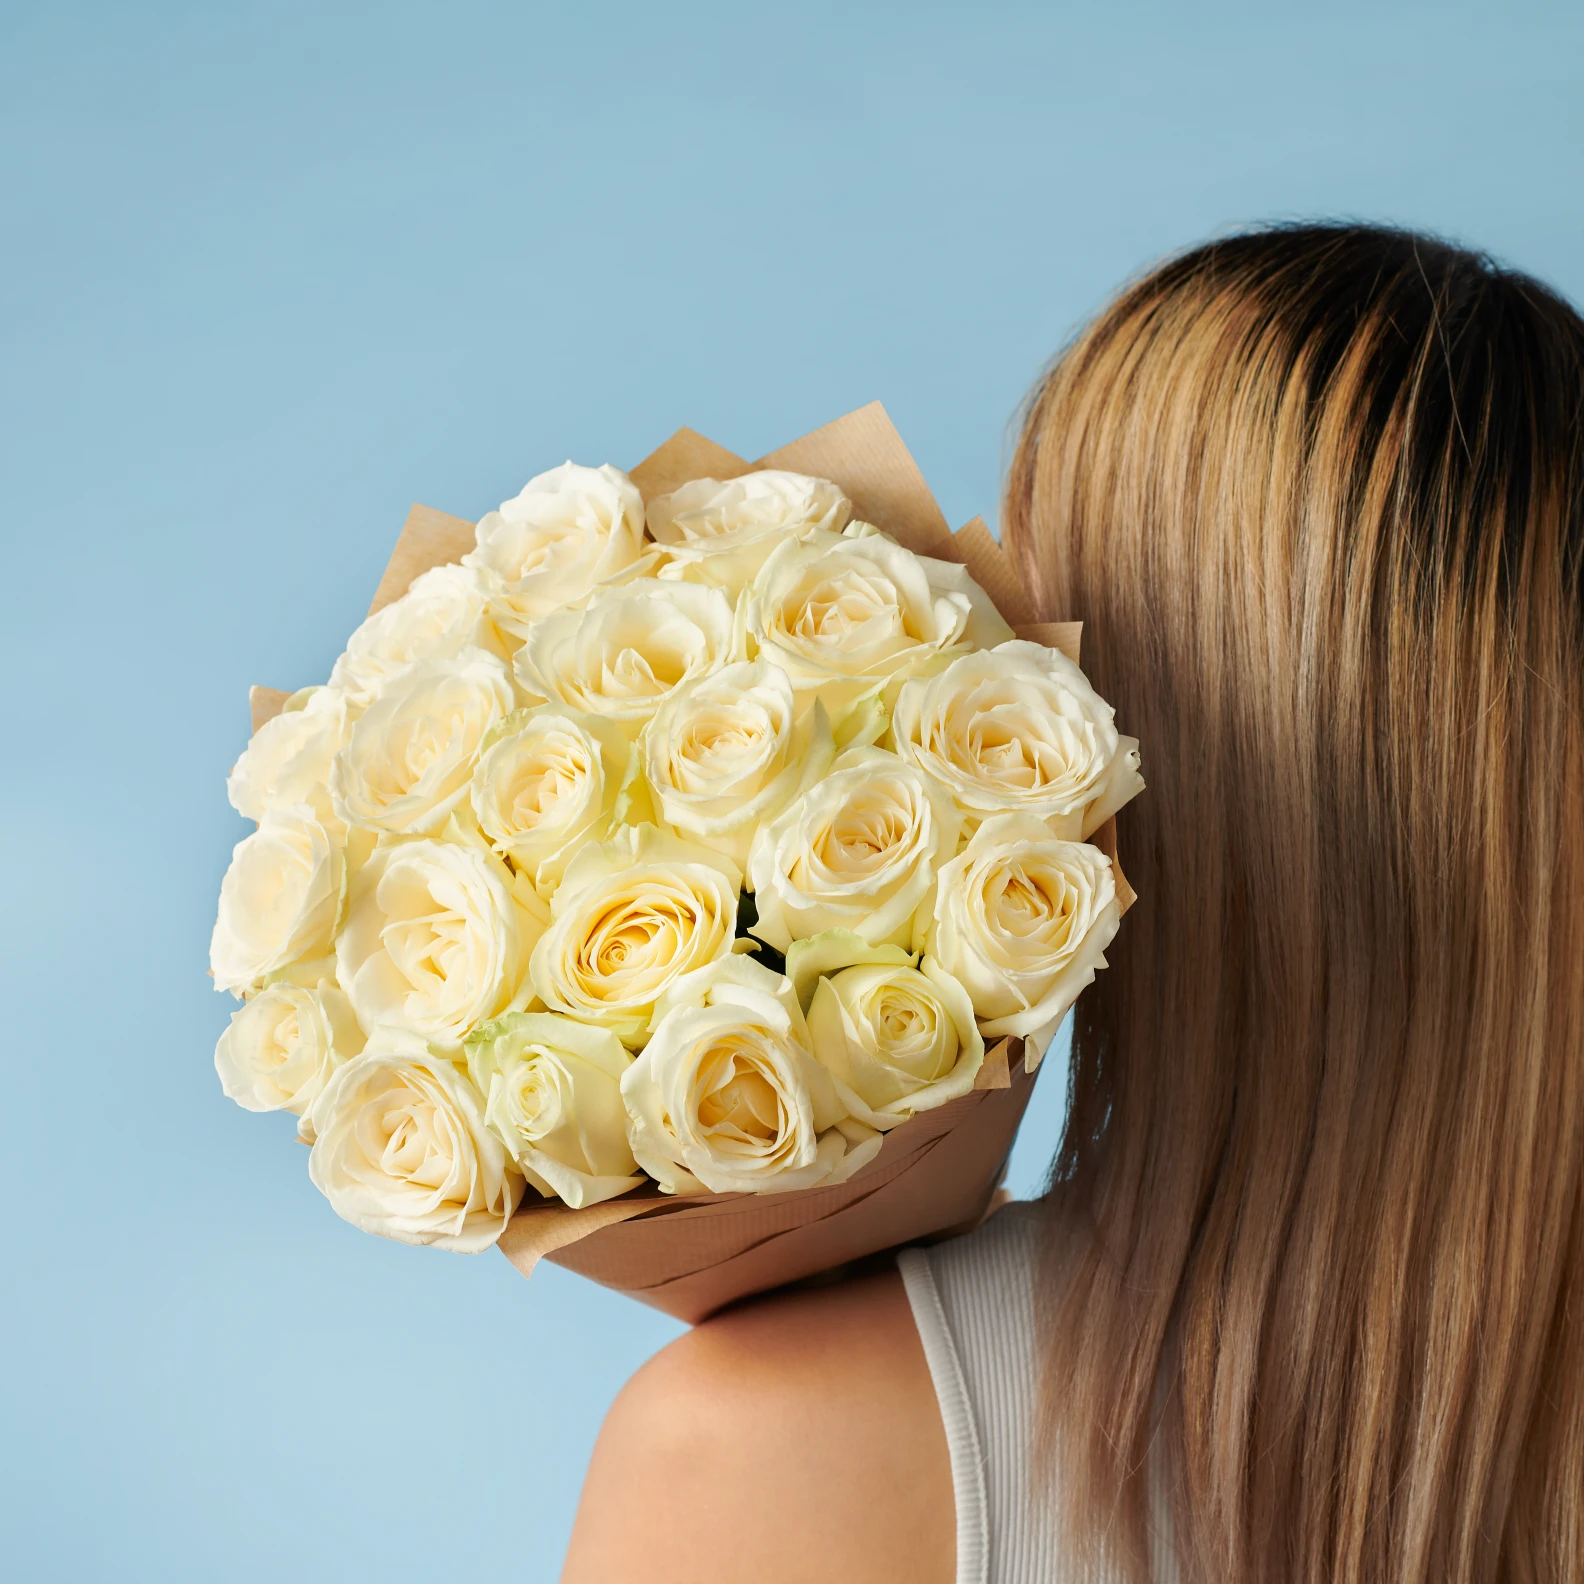 20 Premium White Roses - image №3